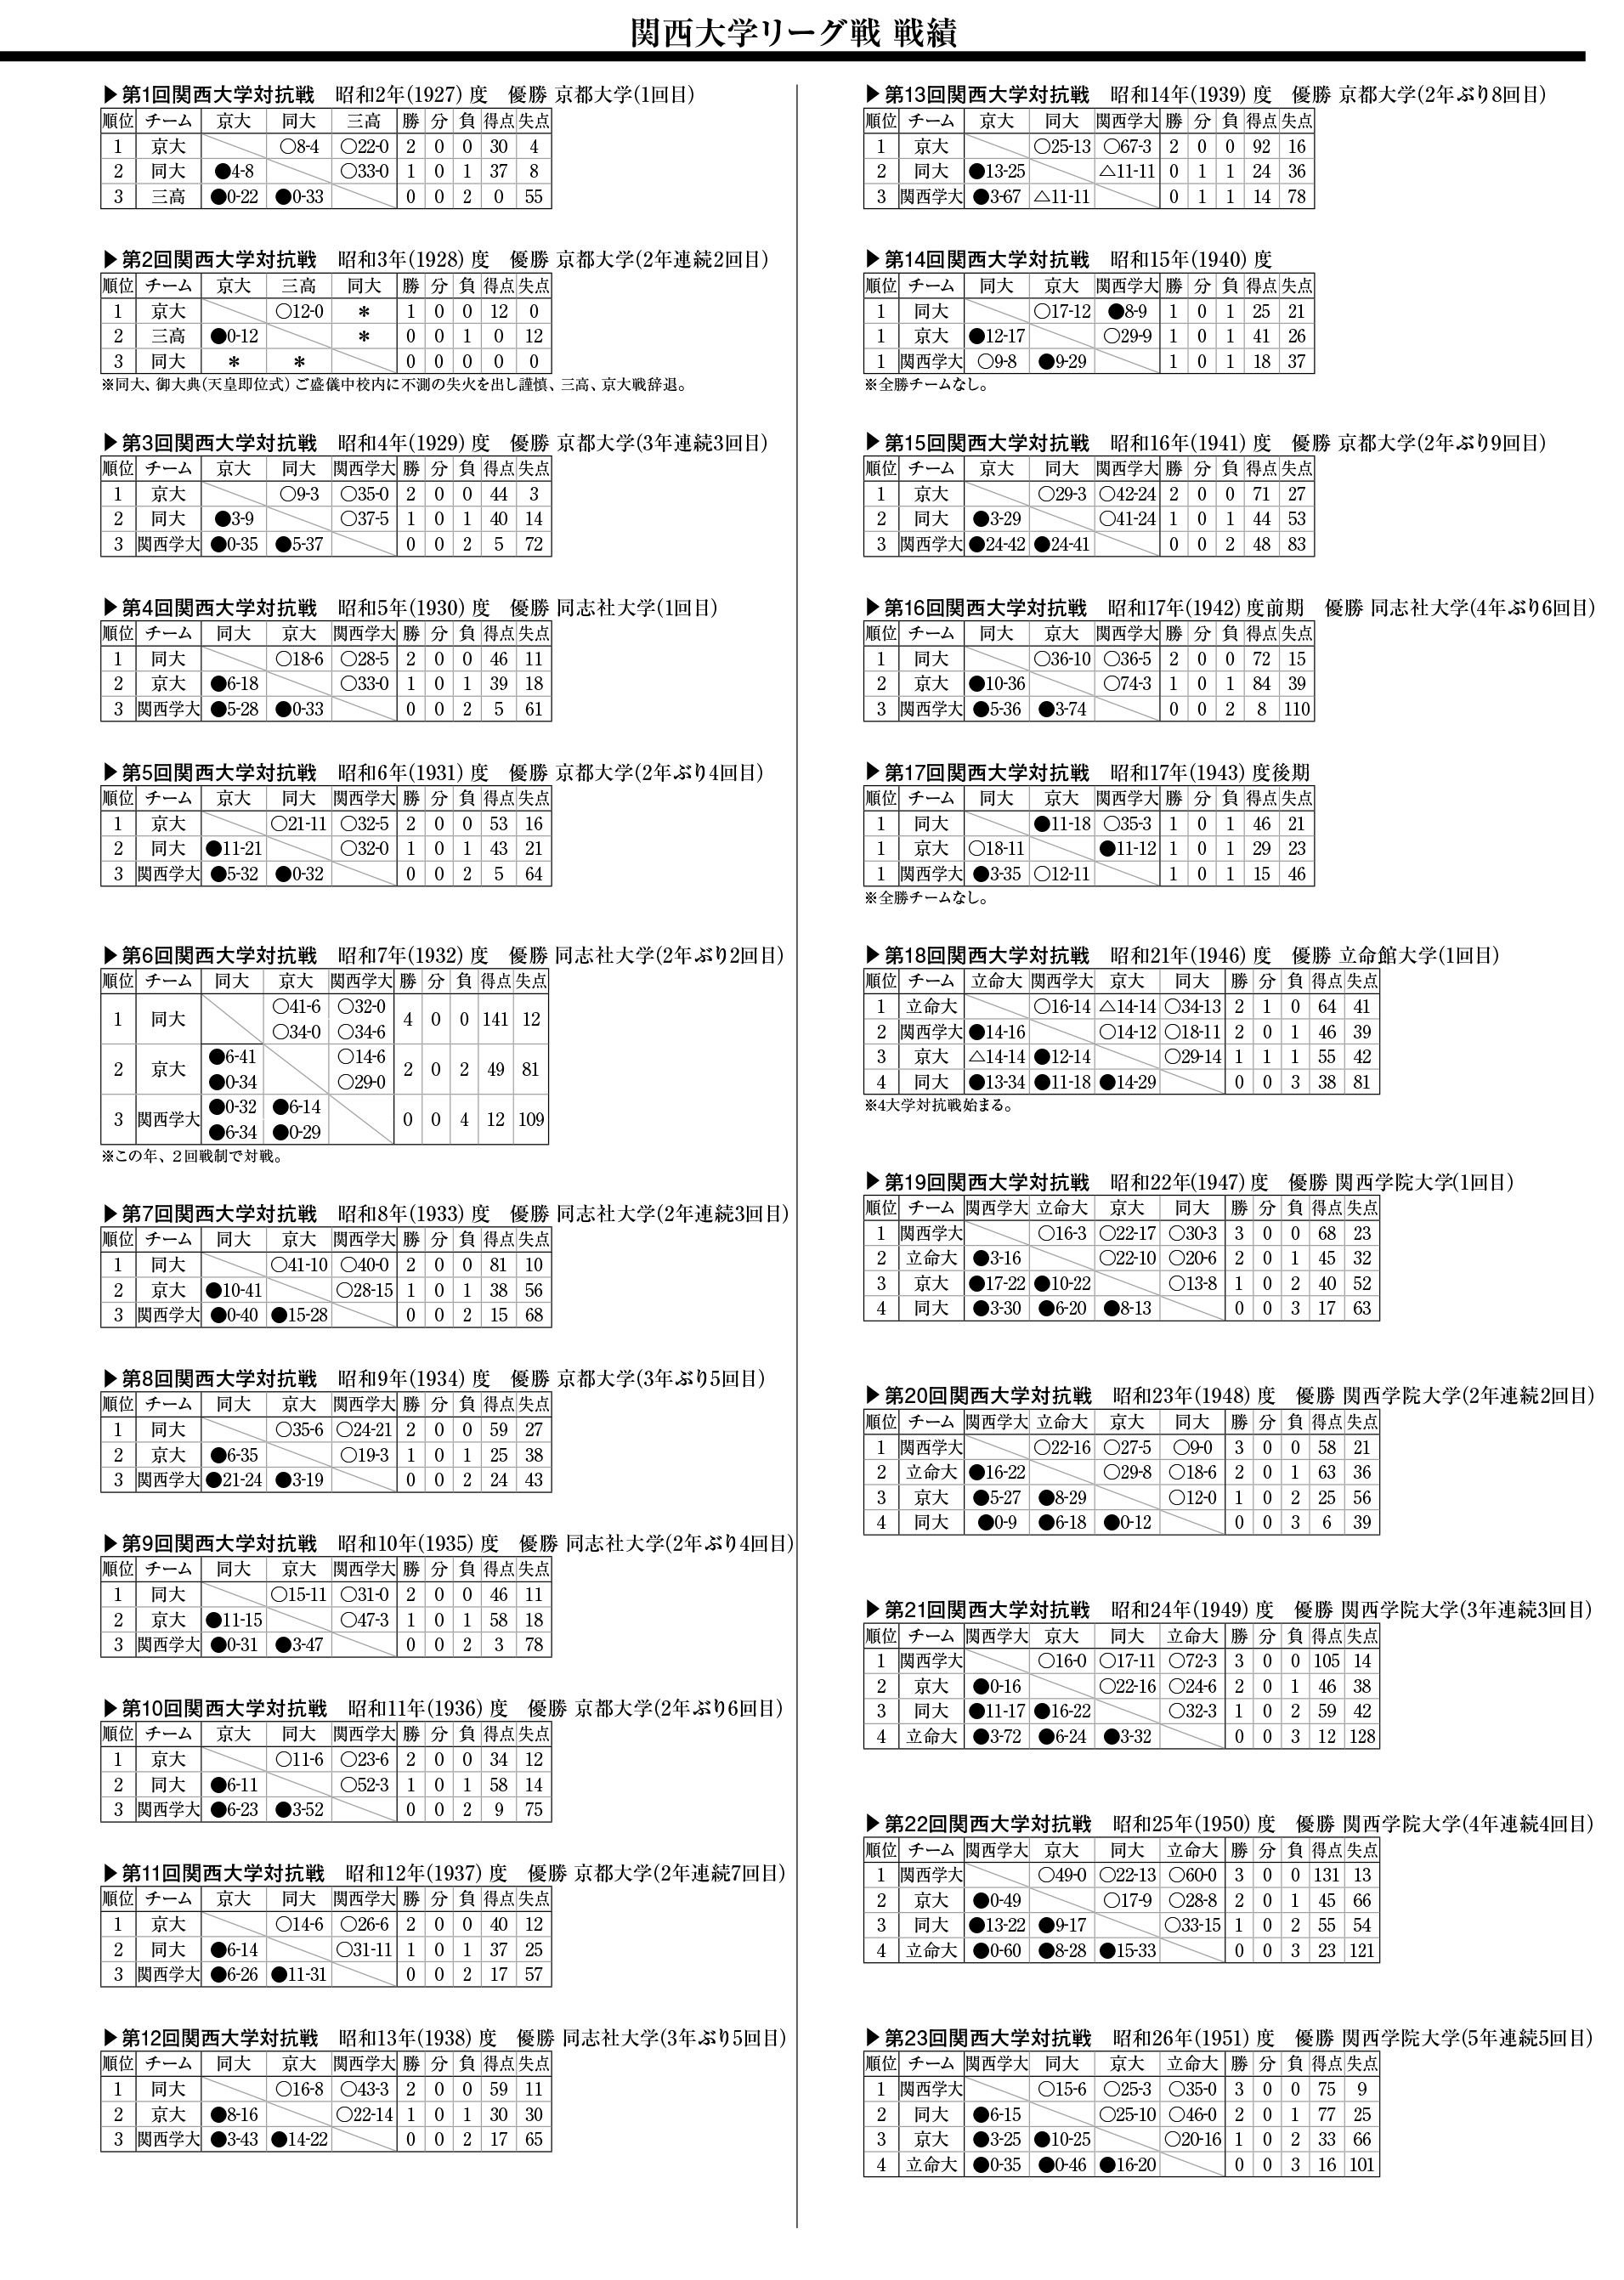 関西大学リーグ戦(第1回～23回)戦績一覧